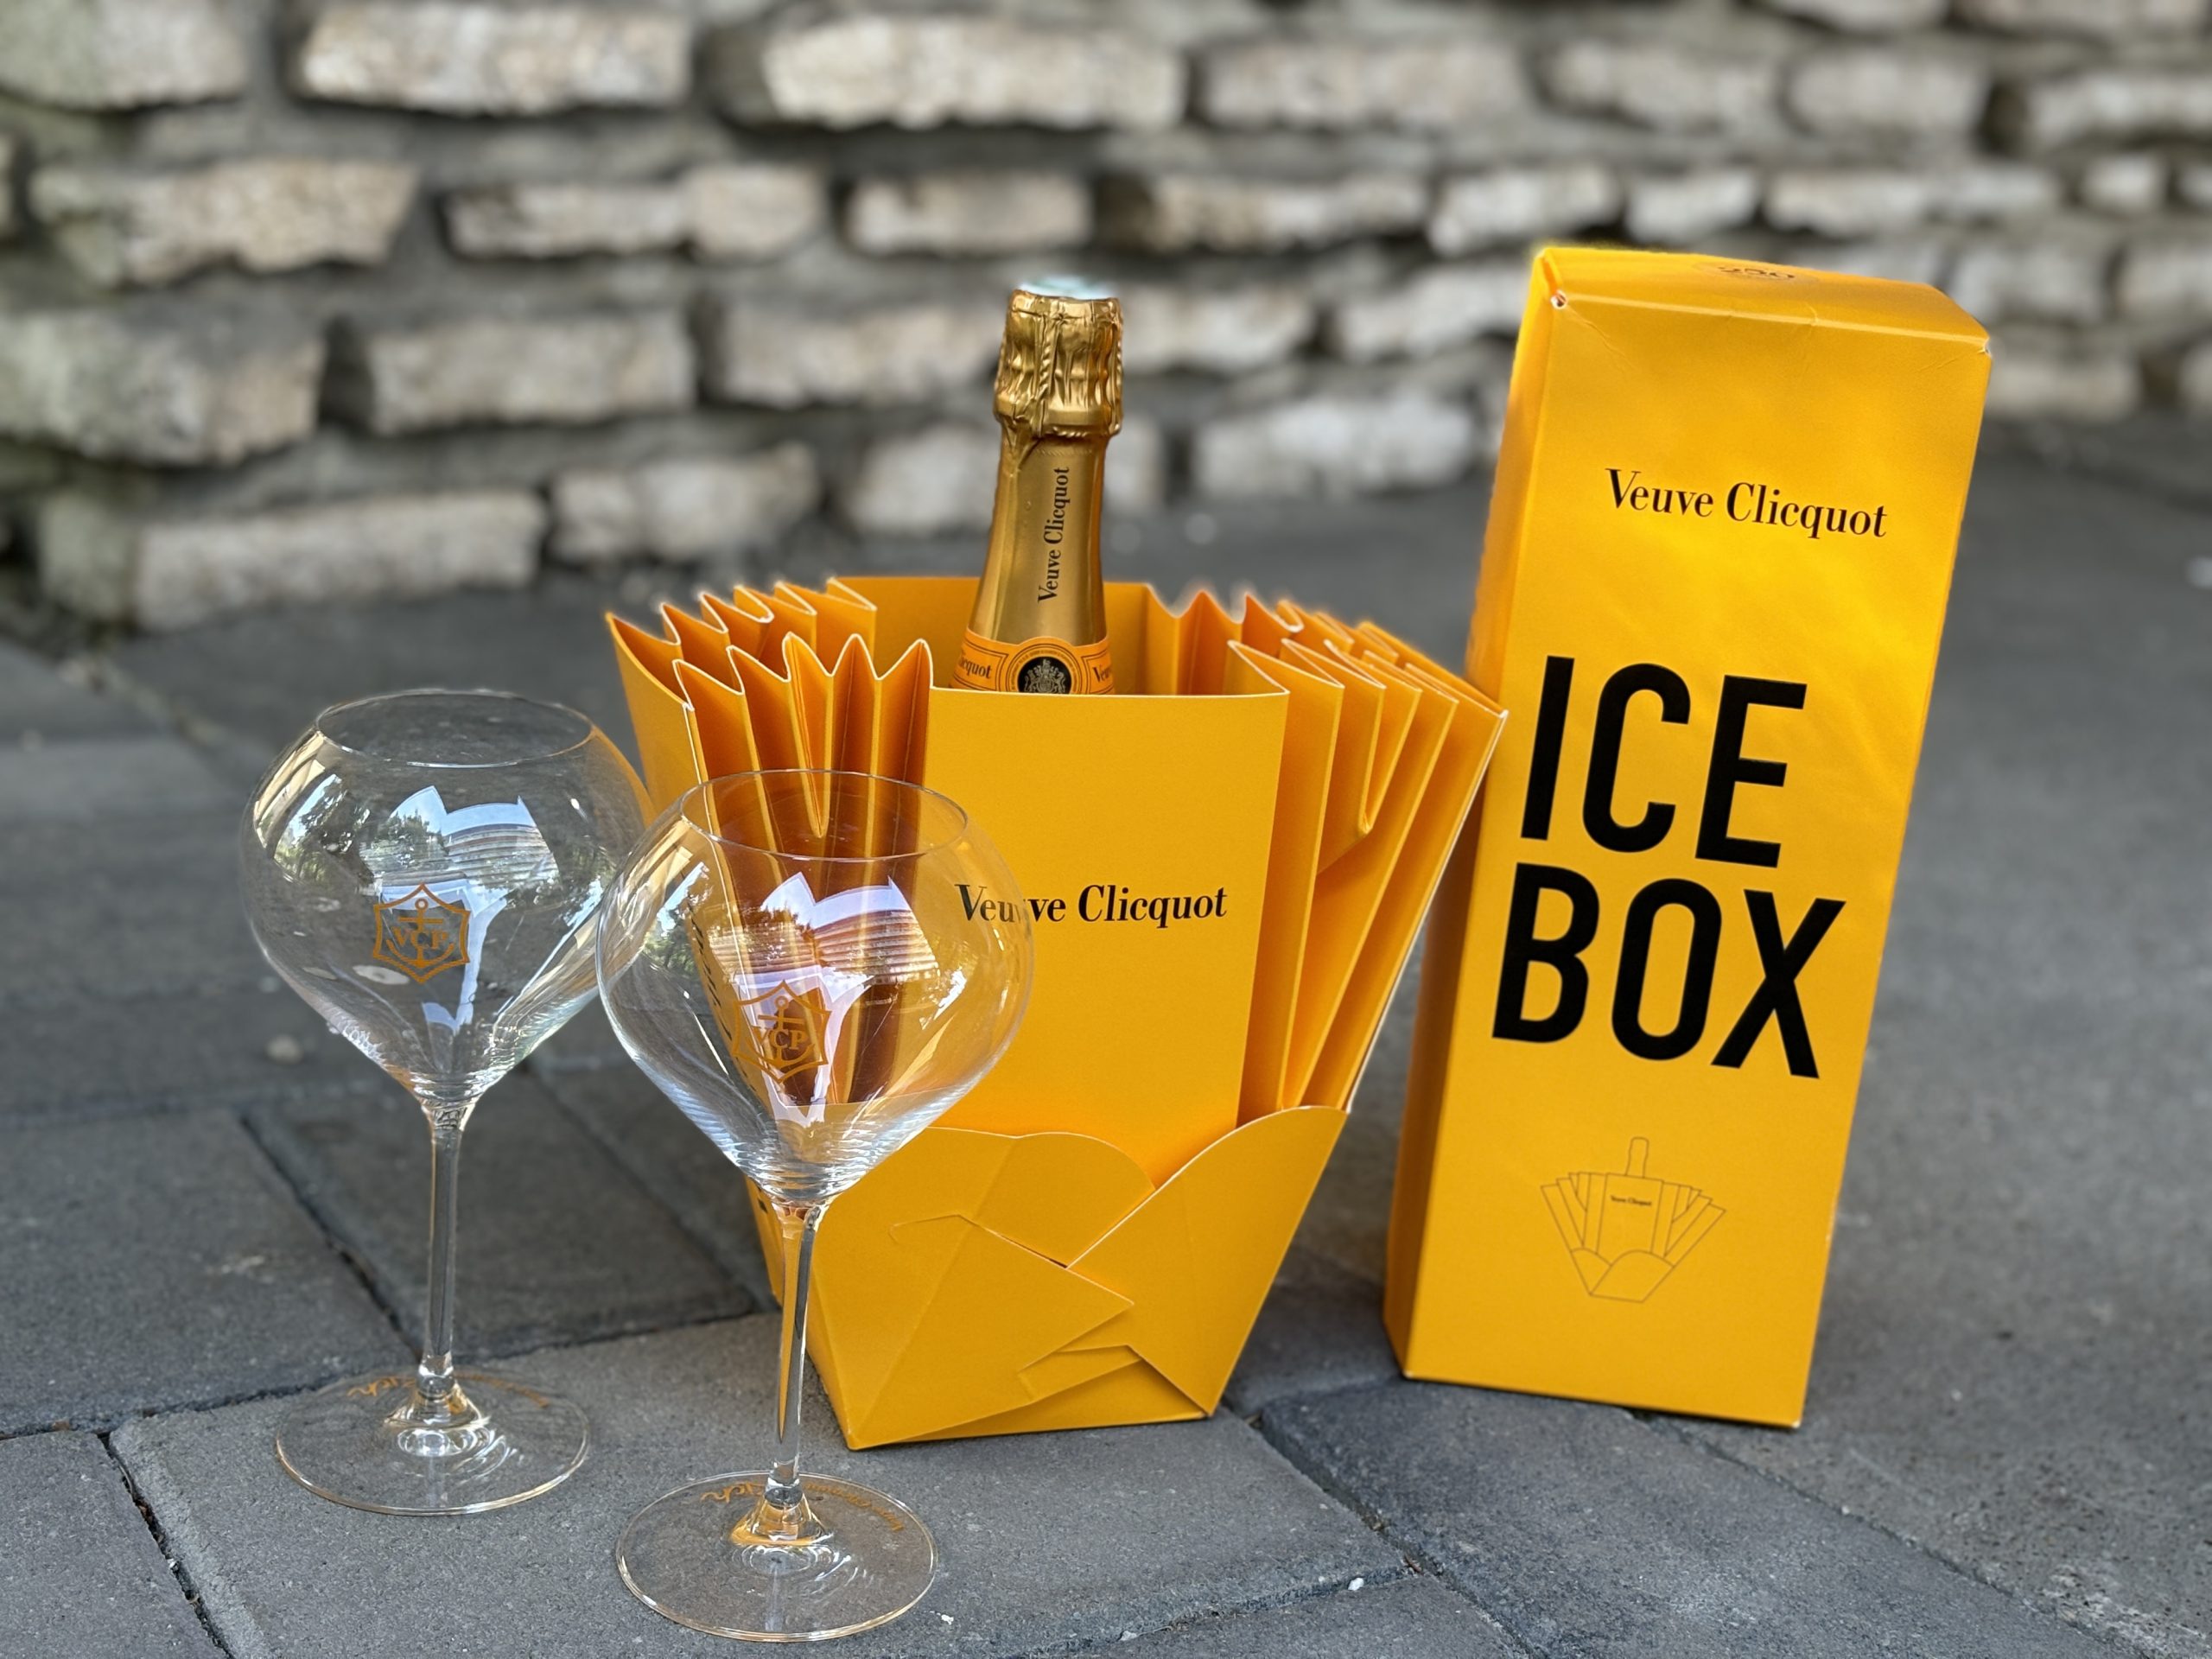 Veuve Clicquot ICE BOX egy palack Brut champagne és 2 RICH kristálypohár – 68.400.-Ft